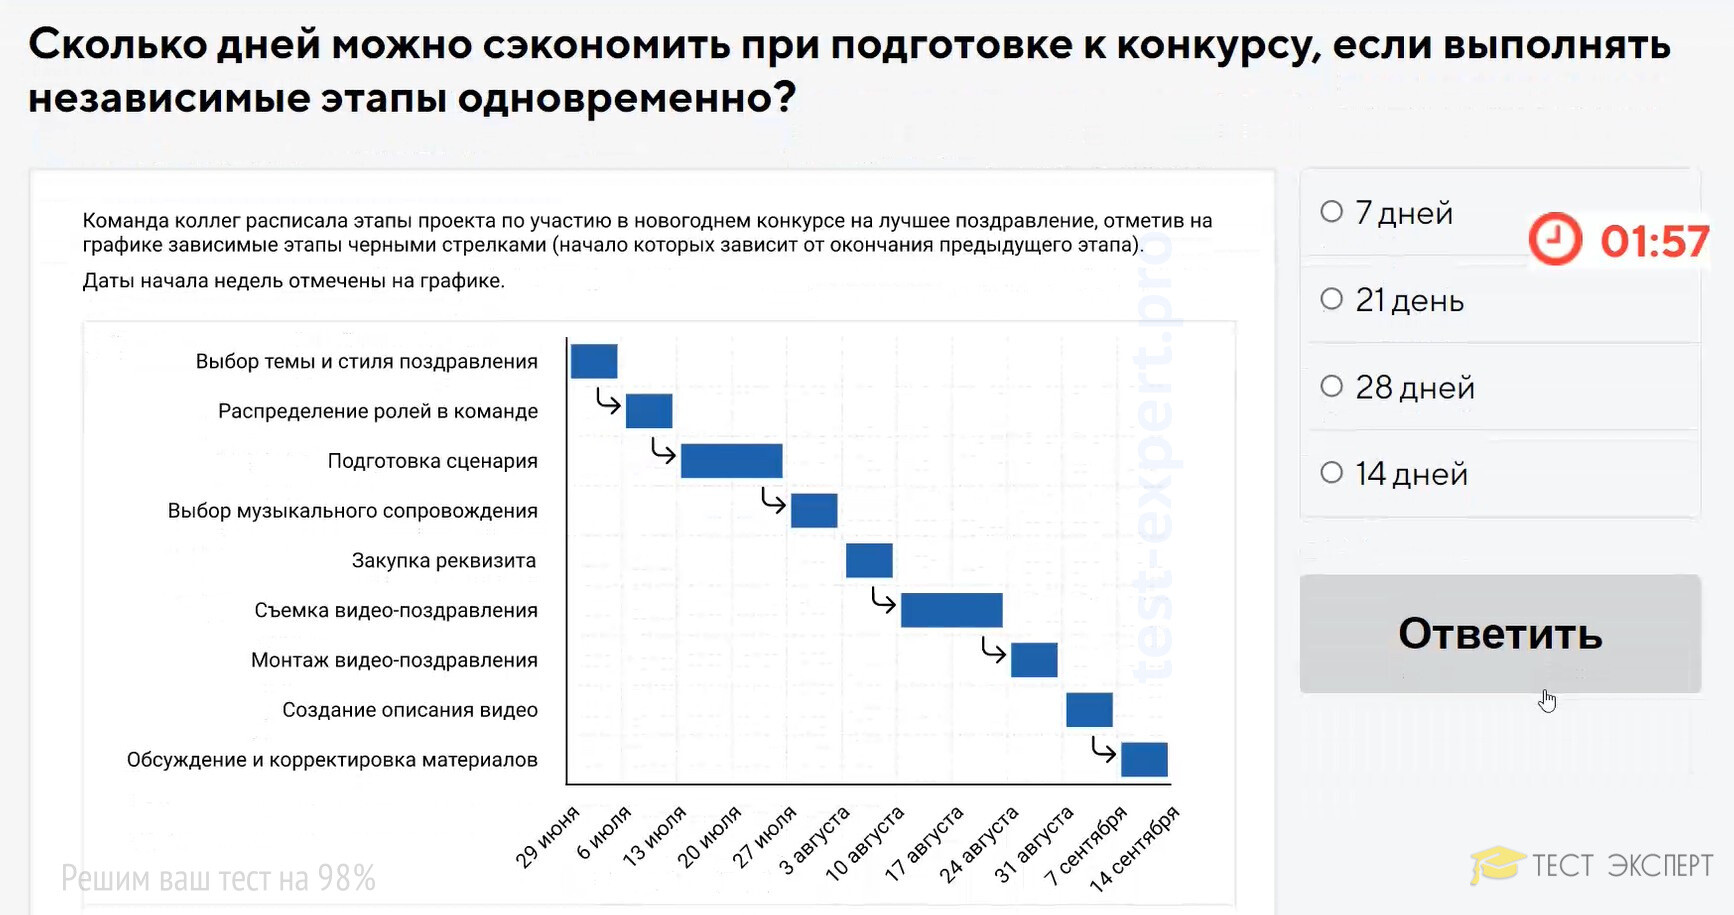 Скриншоты заданий и ответов с тестов Лидеры России 2020 года